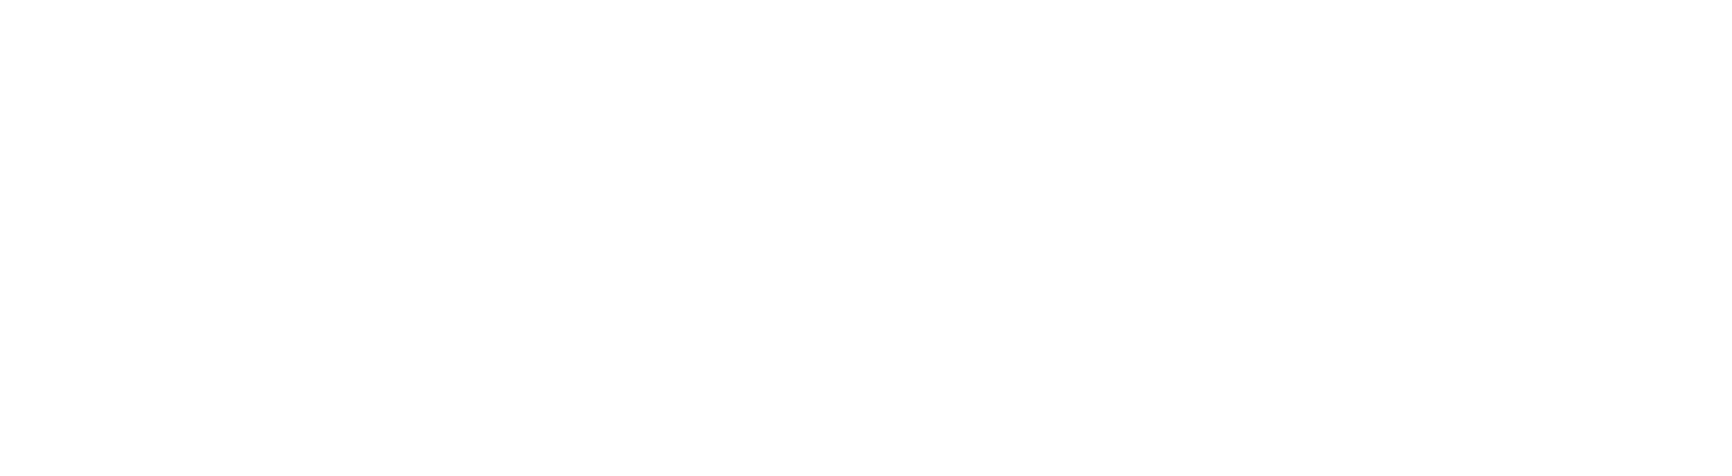 China Telecom Logo groß für dunkle Hintergründe (transparentes PNG)